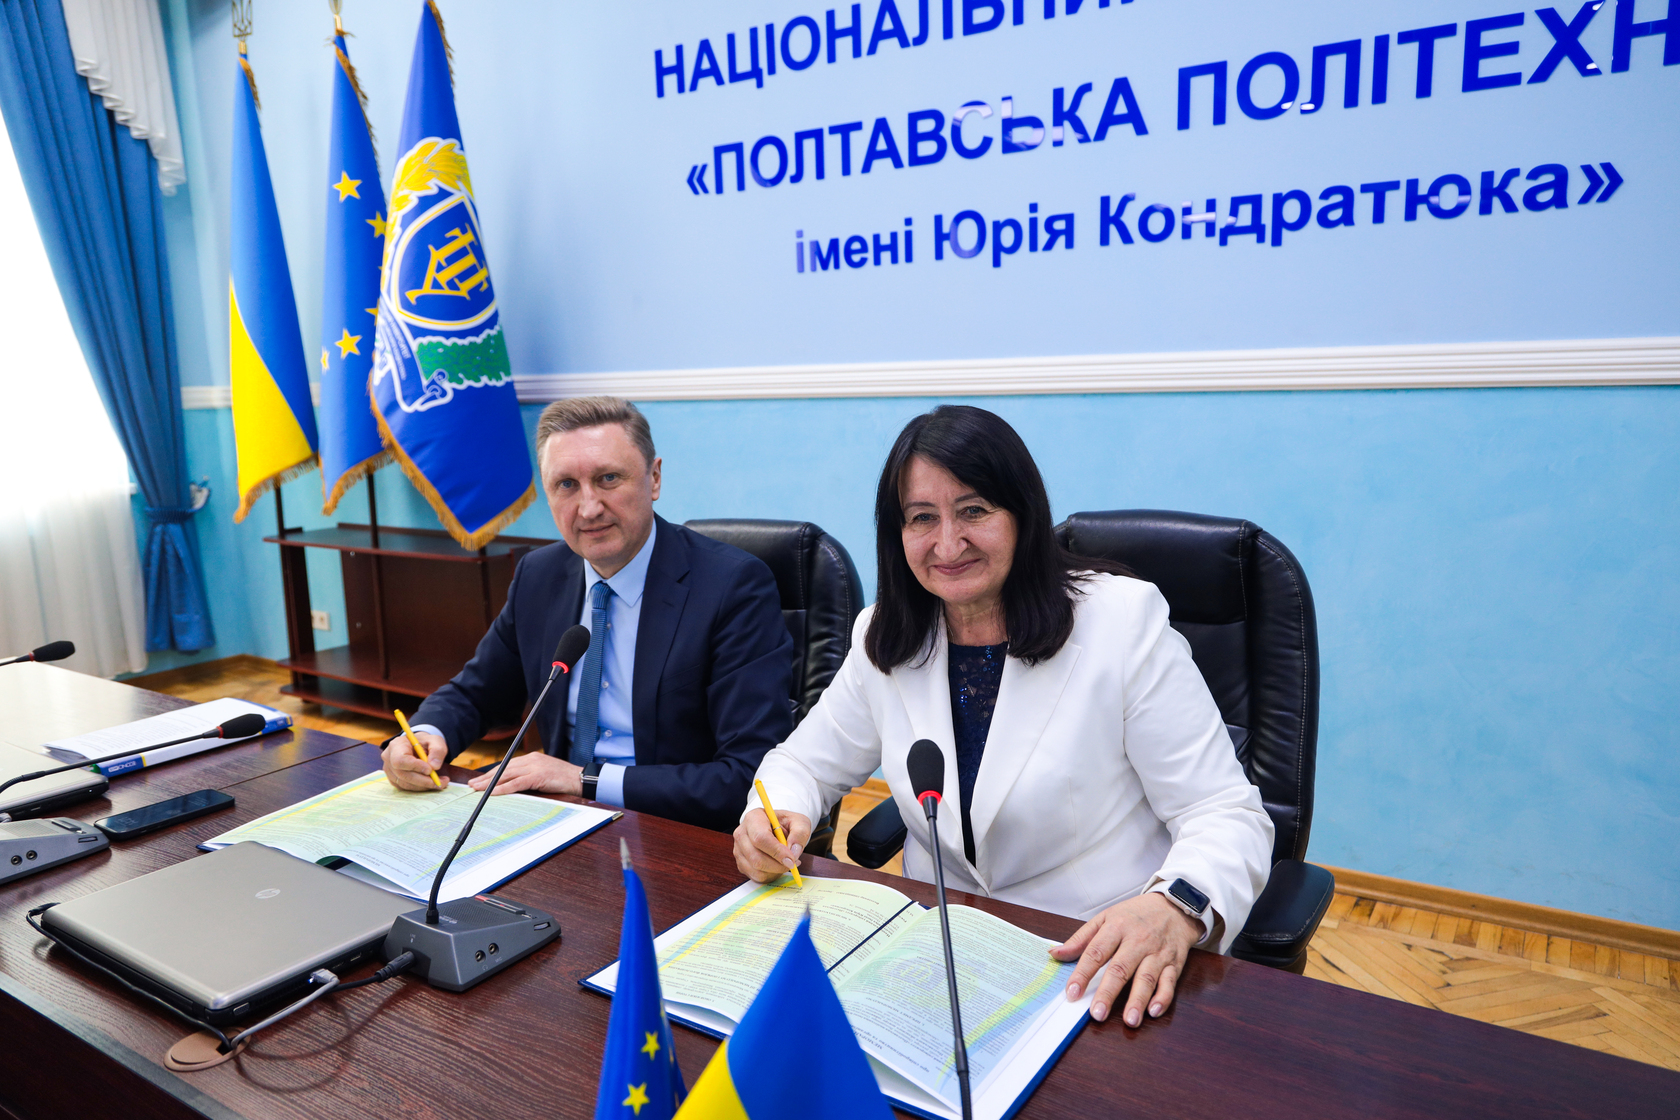 Політехніка підписала Меморандум про співпрацю з Полтавським обласним центром зайнятості